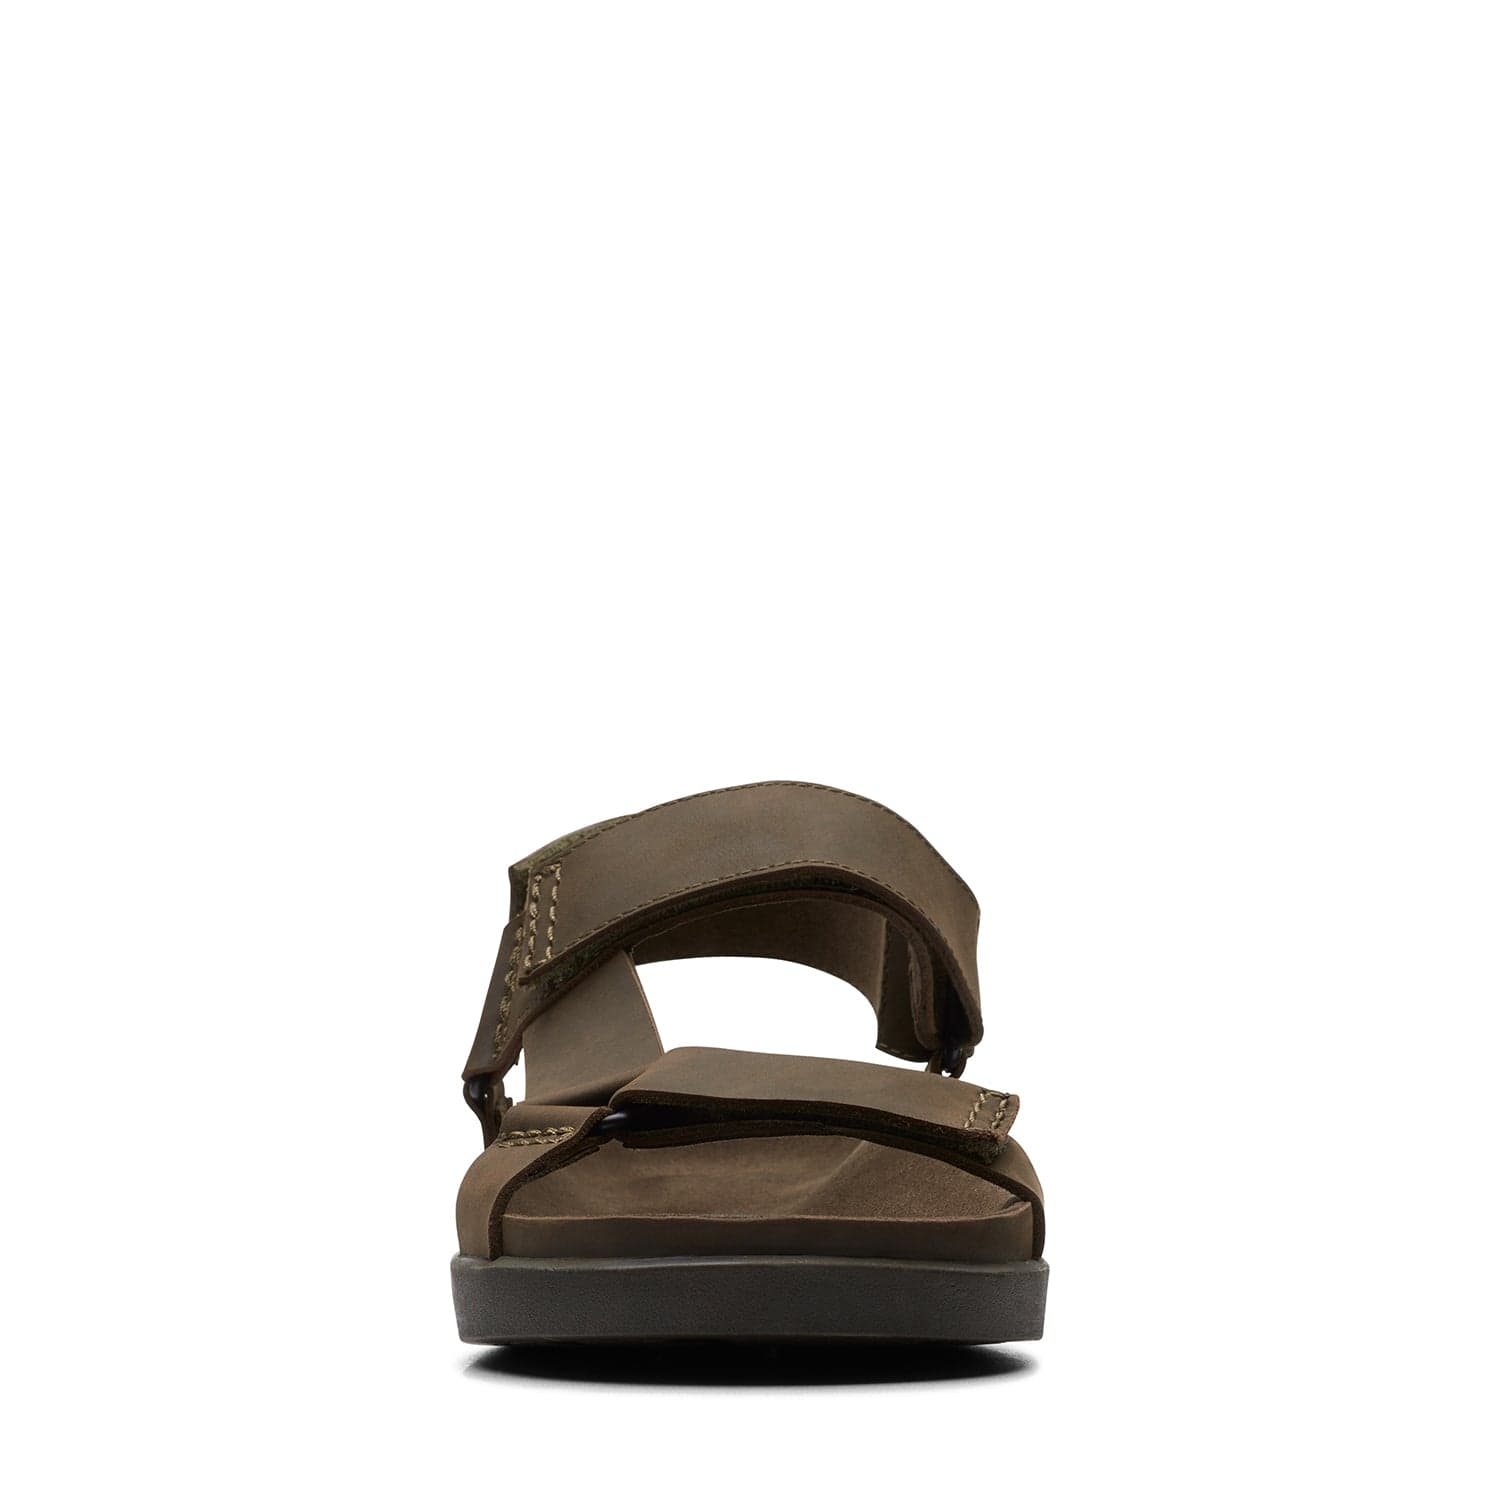 Clarks Sunder Range - Sandals - Dark Olive Lea - 261718877 - G Width (Standard Fit)